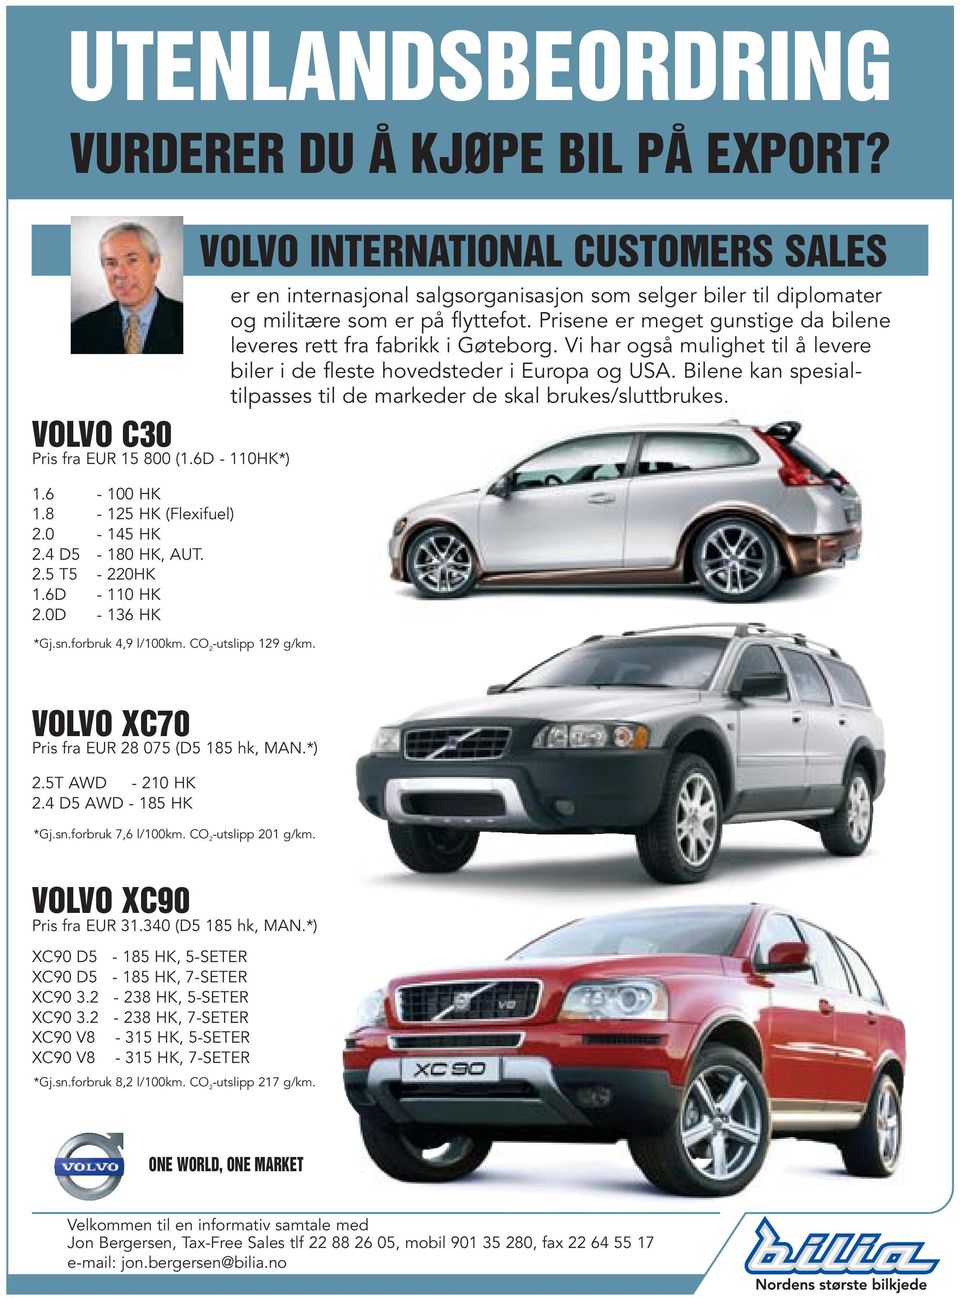 VOLVO INTERNATIONAL CUSTOMERS SALES er en internasjonal salgsorganisasjon som selger biler til diplomater og militære som er på flyttefot.